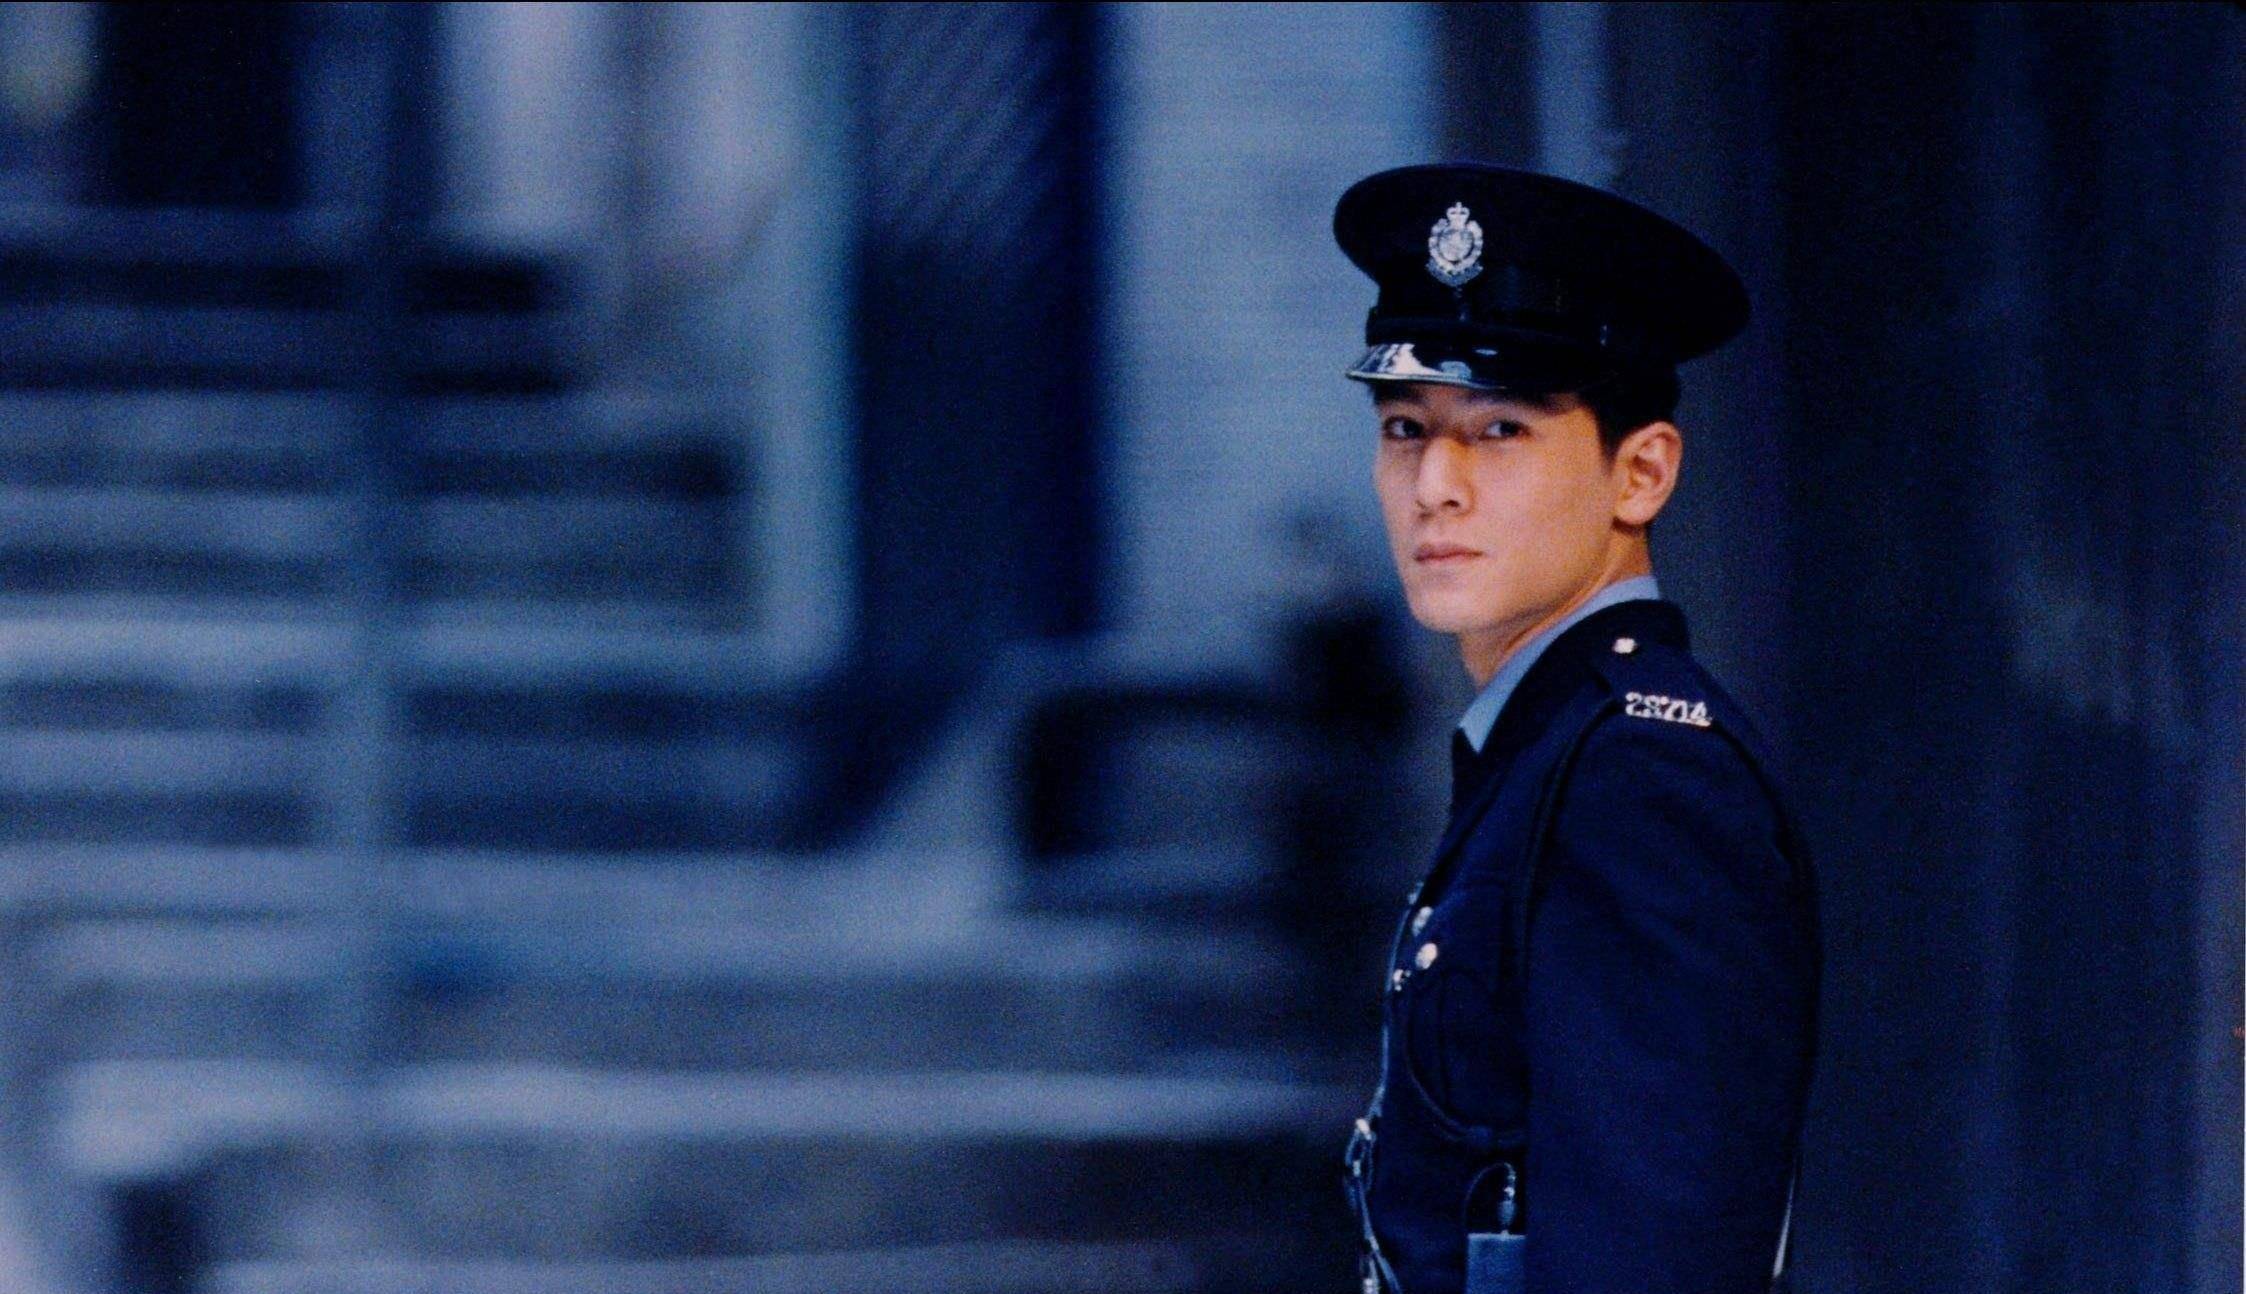 近日王千源,吴彦祖主演的电影《除暴》上映了一部典型的警匪片